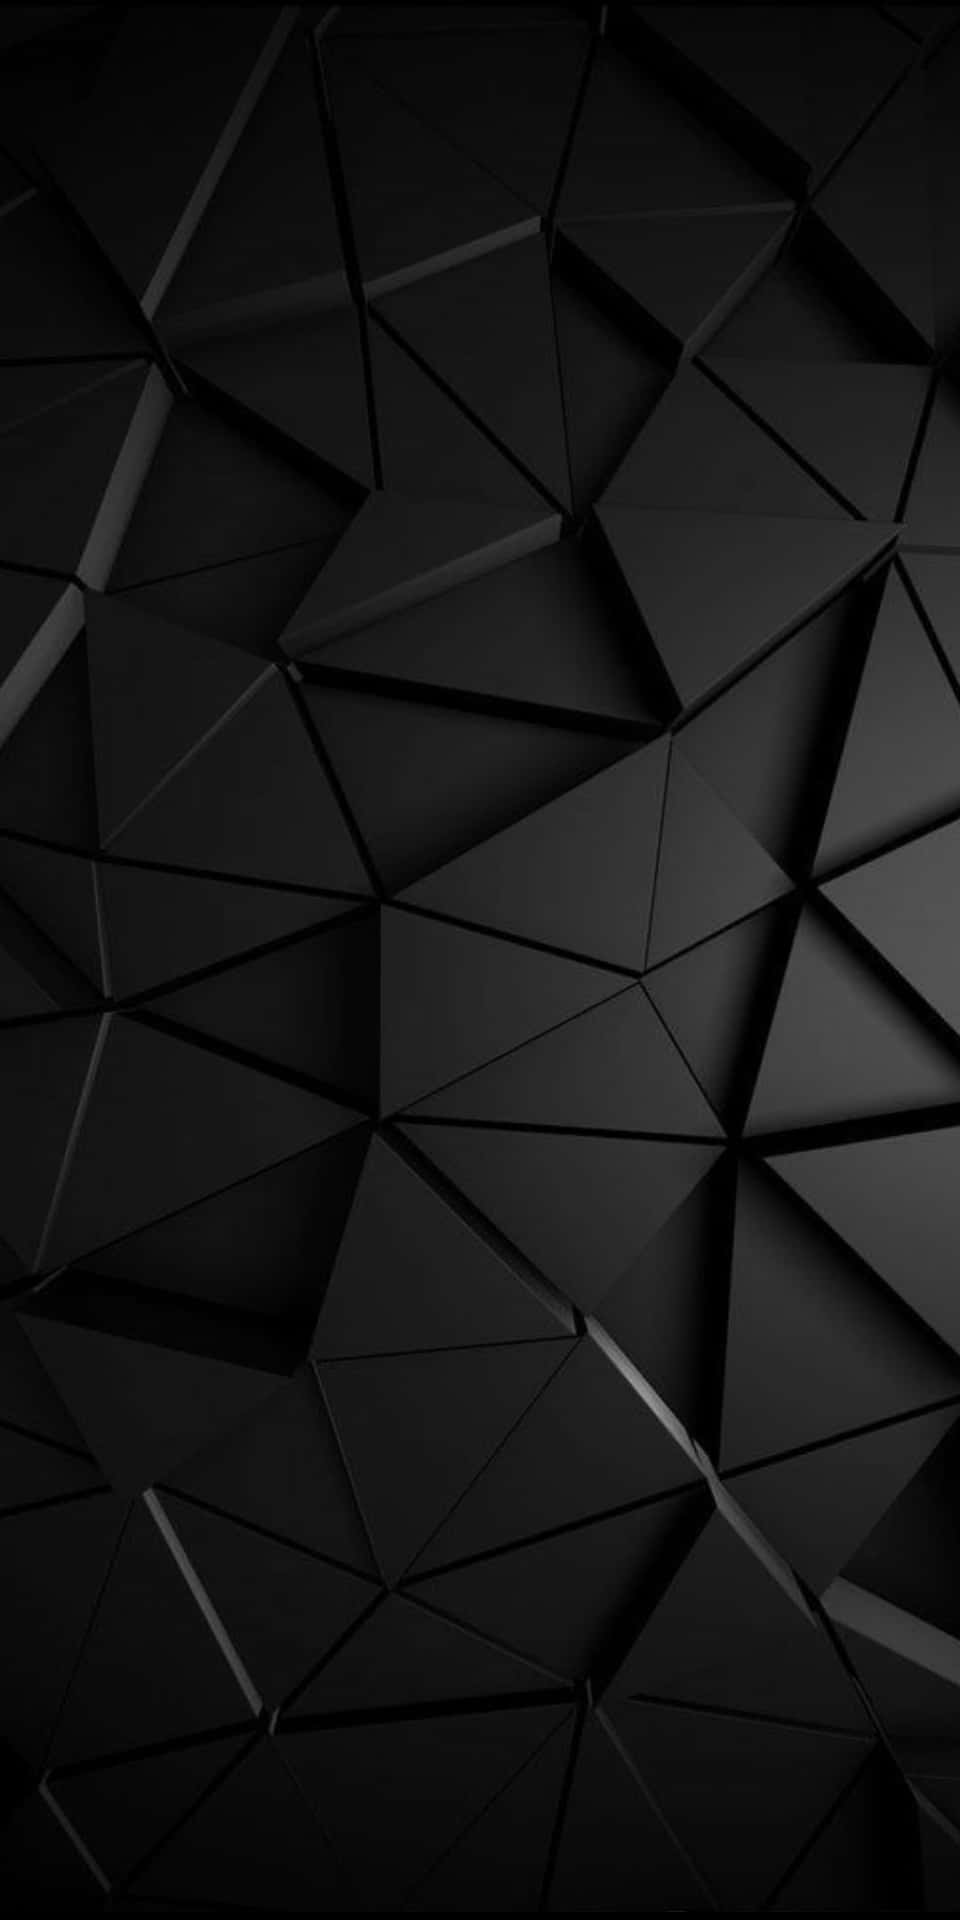 4k Amoled Background Black Triangular Blocks Background